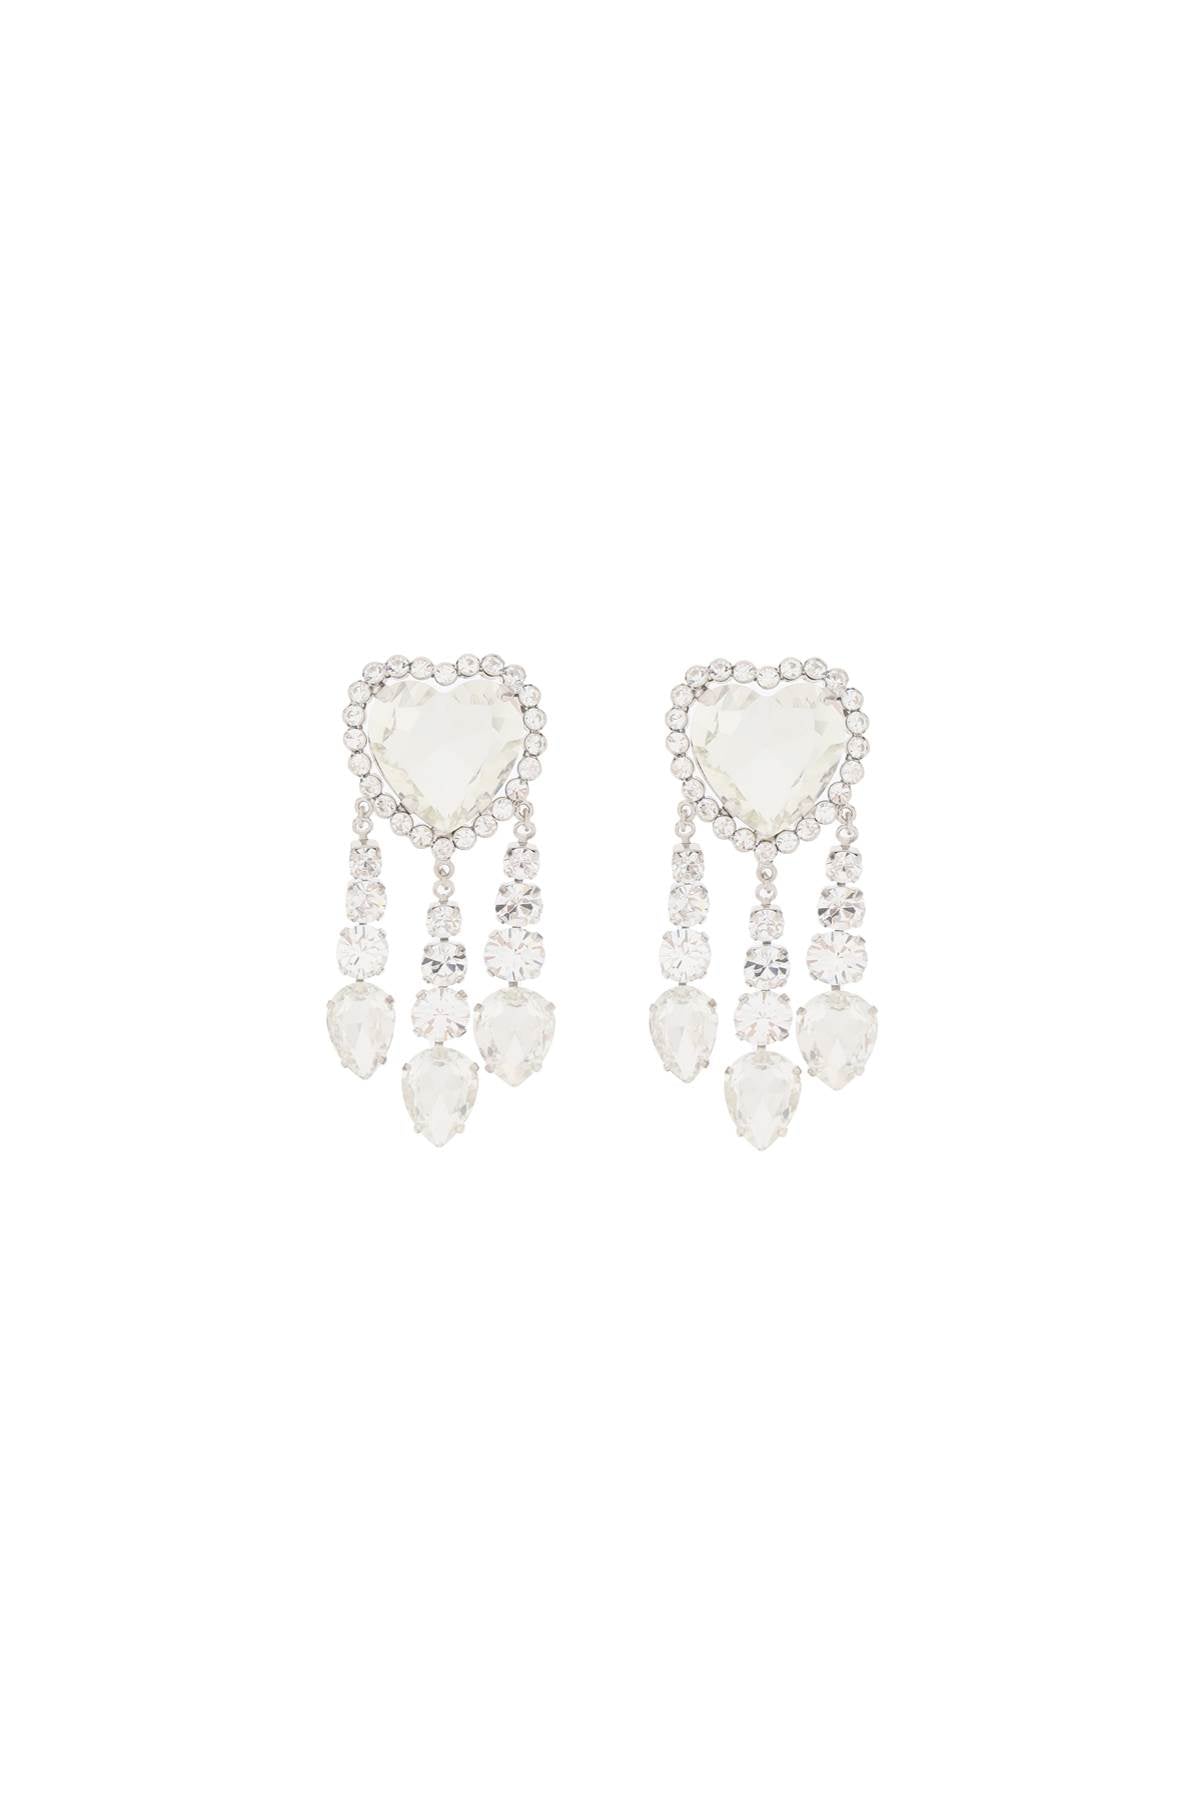 Alessandra rich heart earrings with pendants-1